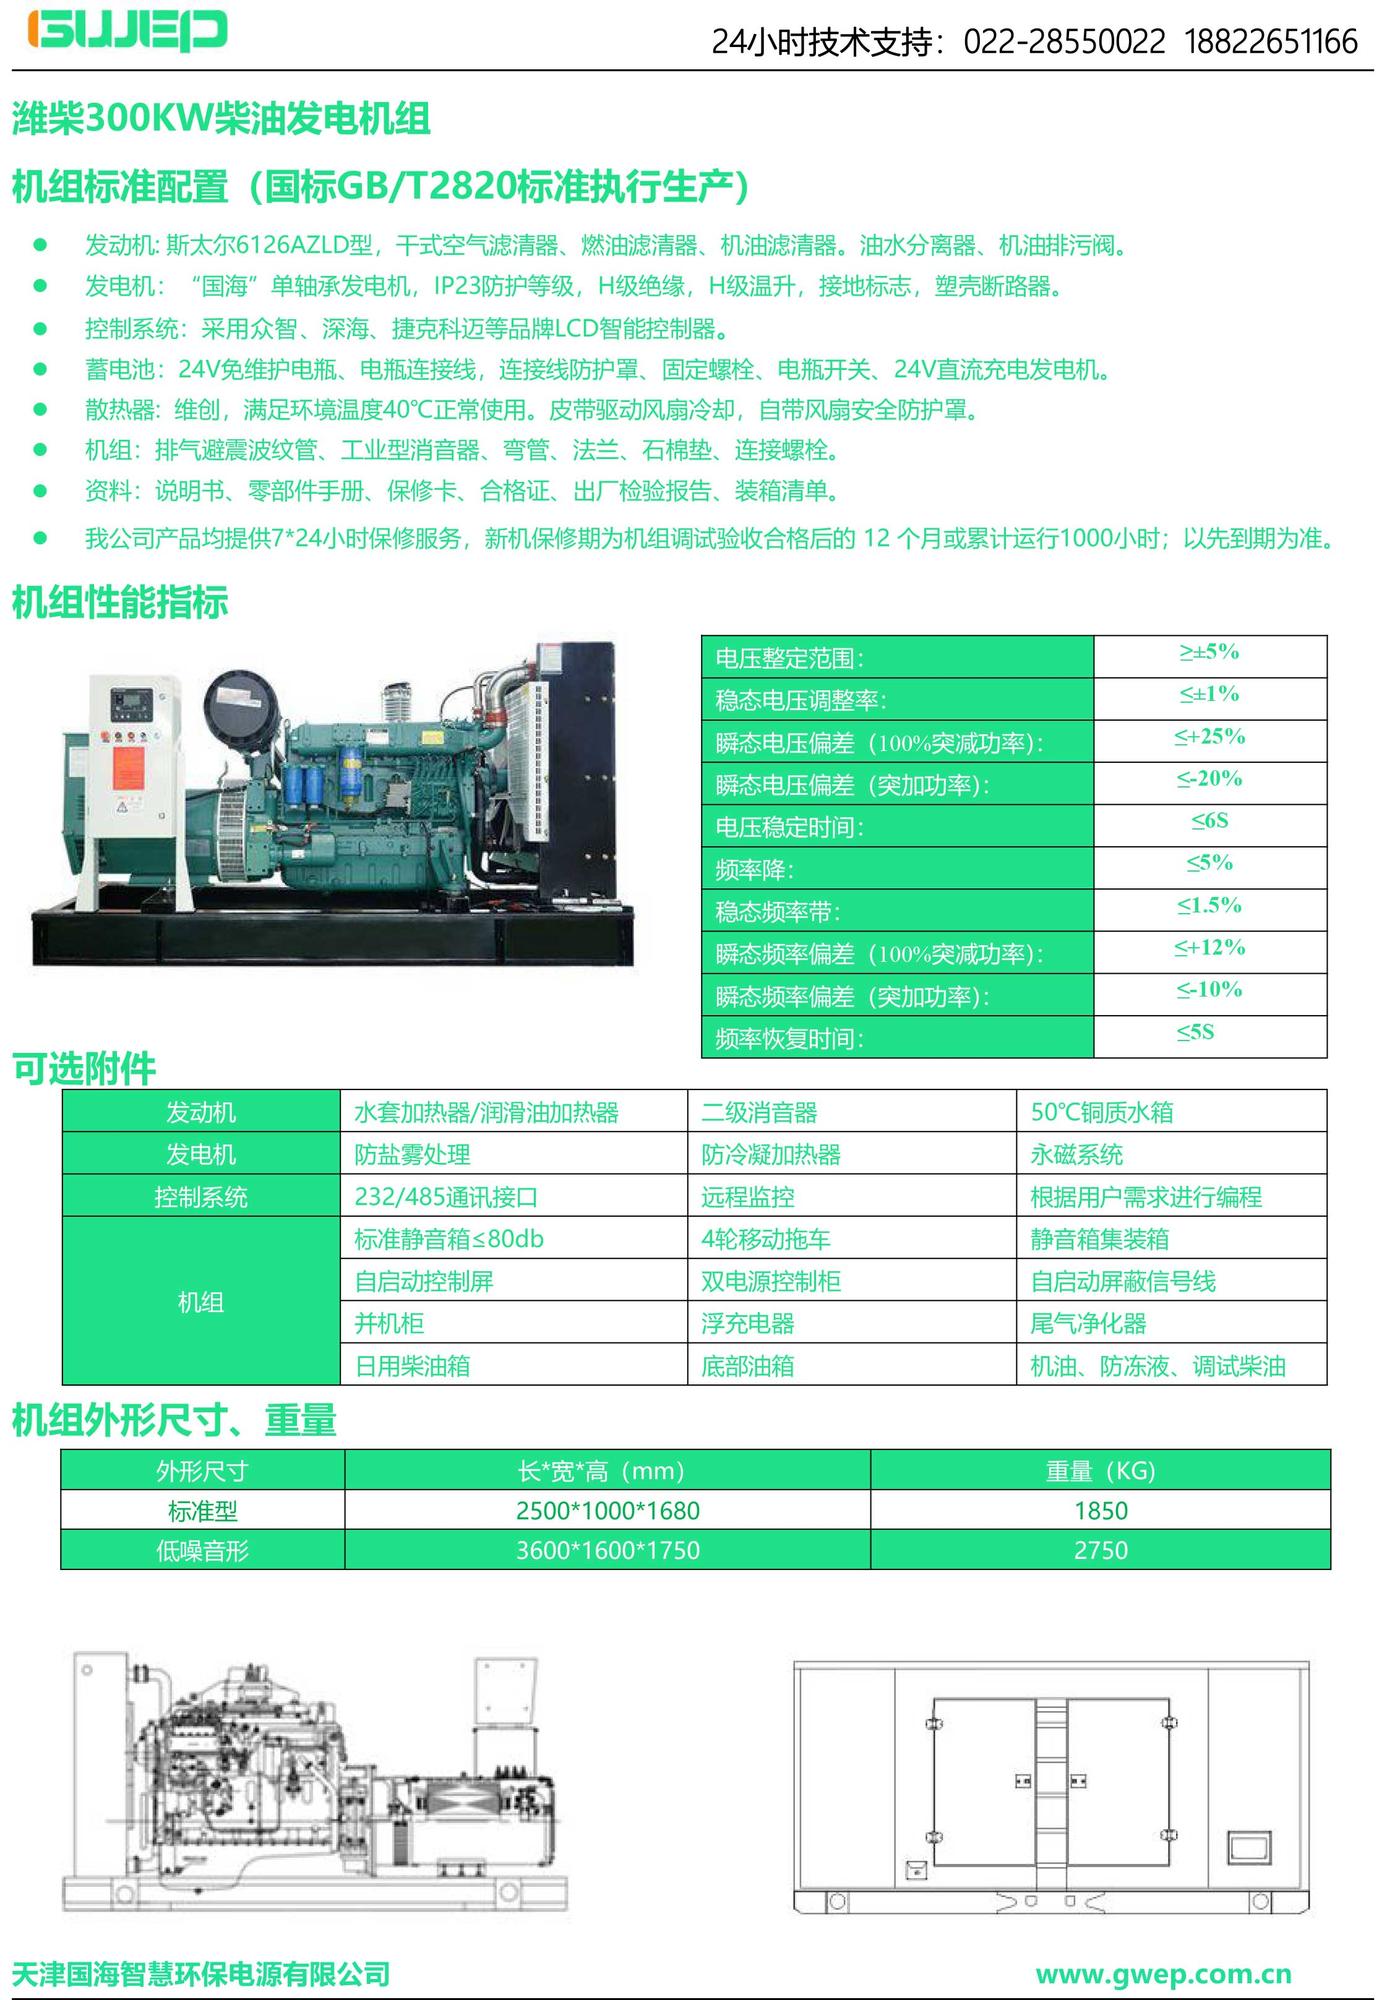 潍柴300KW发电机组技术资料-1.jpg